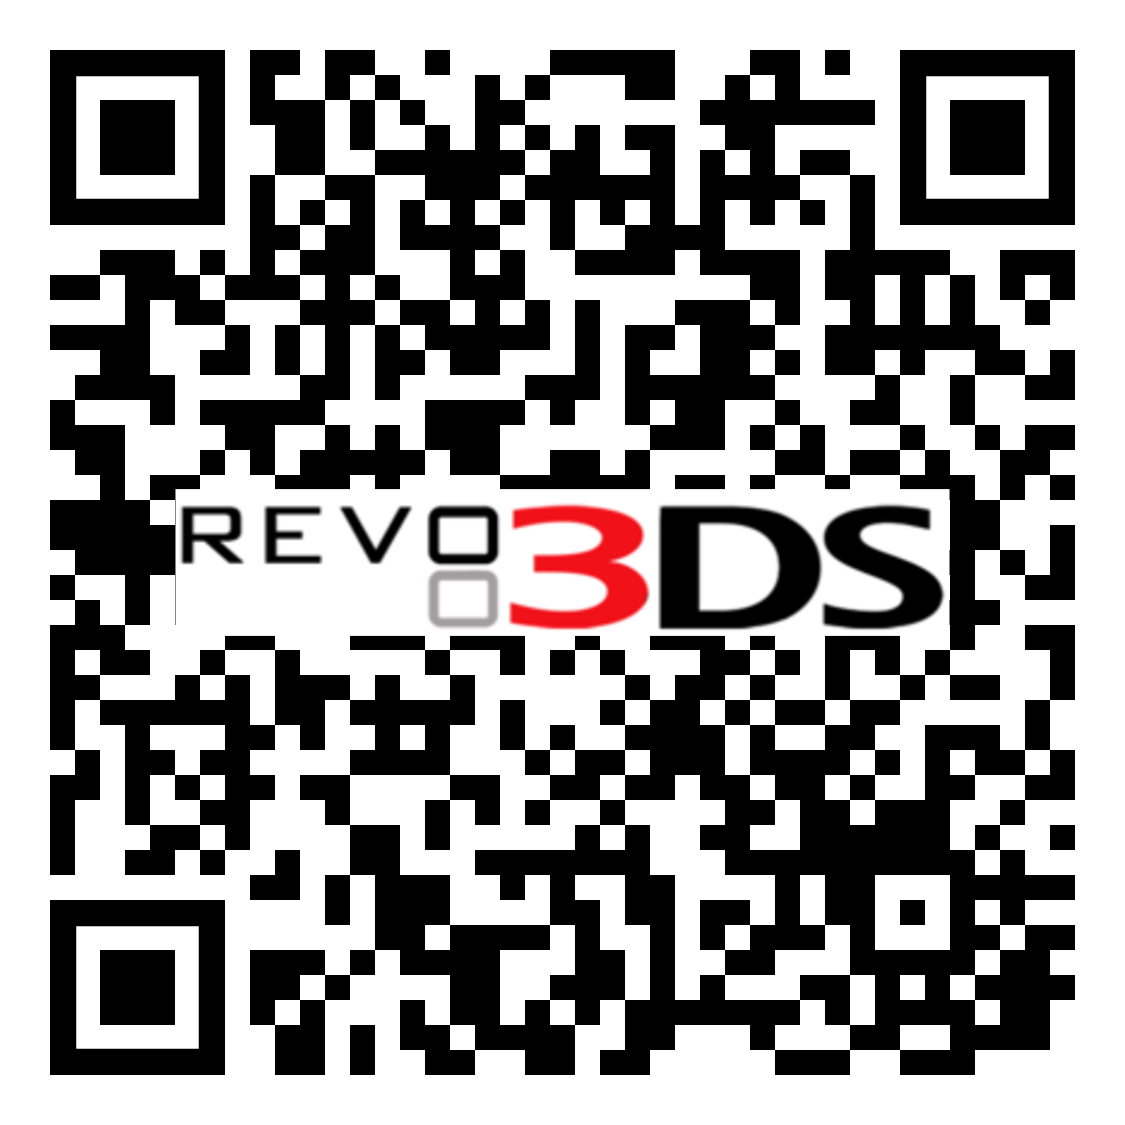 EUR - Super Smash Bros 3DS - Colección de Juegos CIA para 3DS por QR!